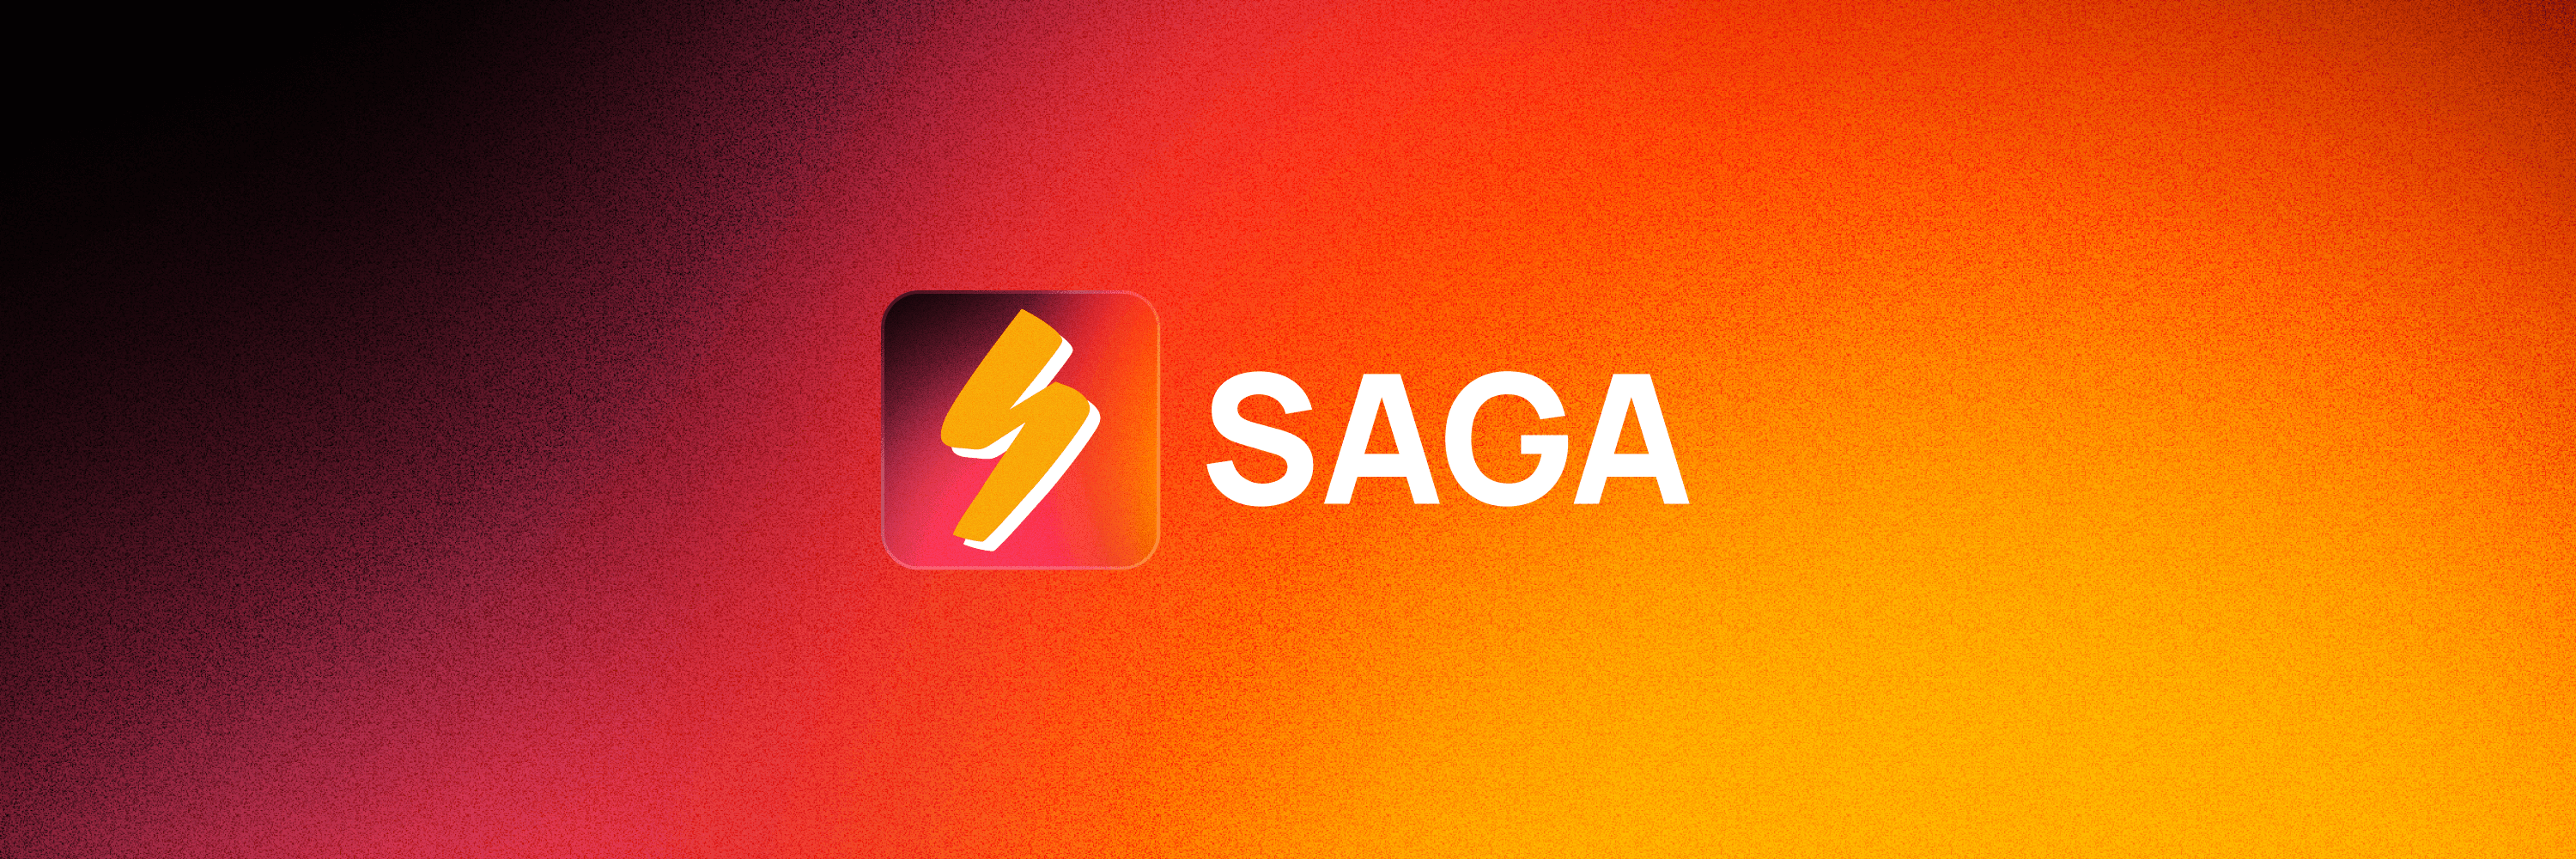 Saga - Créer et jouer des aventures en texte avec des personnages améliorés en AI